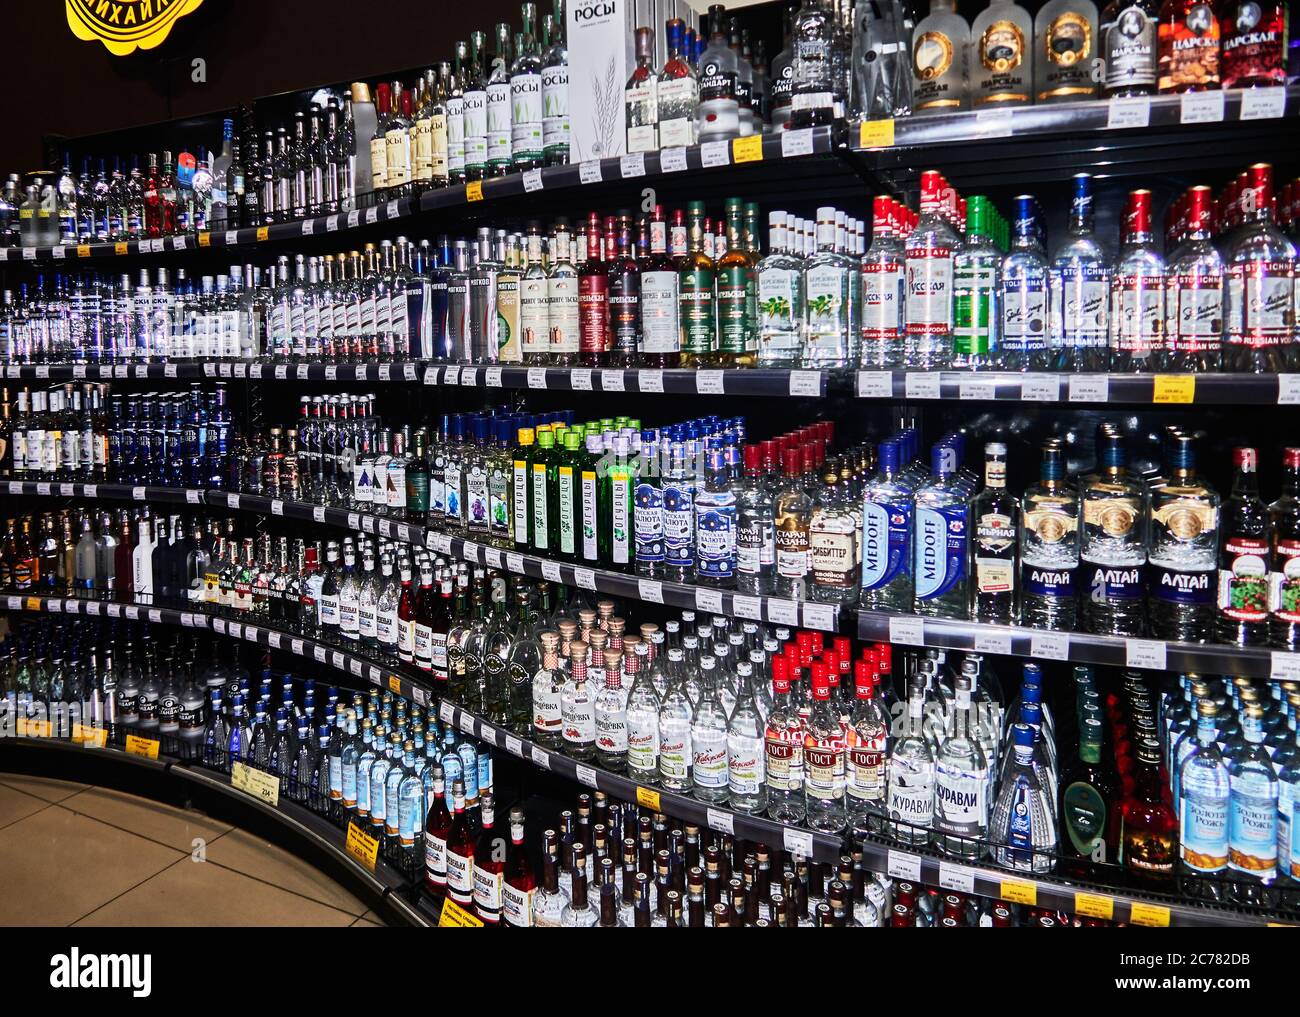 Russland, Astrachan Oblast. Astrachan Stadt Die größten Verbraucher von Wodka in der Welt, trinken durchschnittlich 14 Liter pro Jahr. Viele Menschen in Russland glauben fromm, dass Wodka dem Trinker weniger Schaden anrichtet als andere Spirituosen wie Whiskey und Cognac. Stockfoto